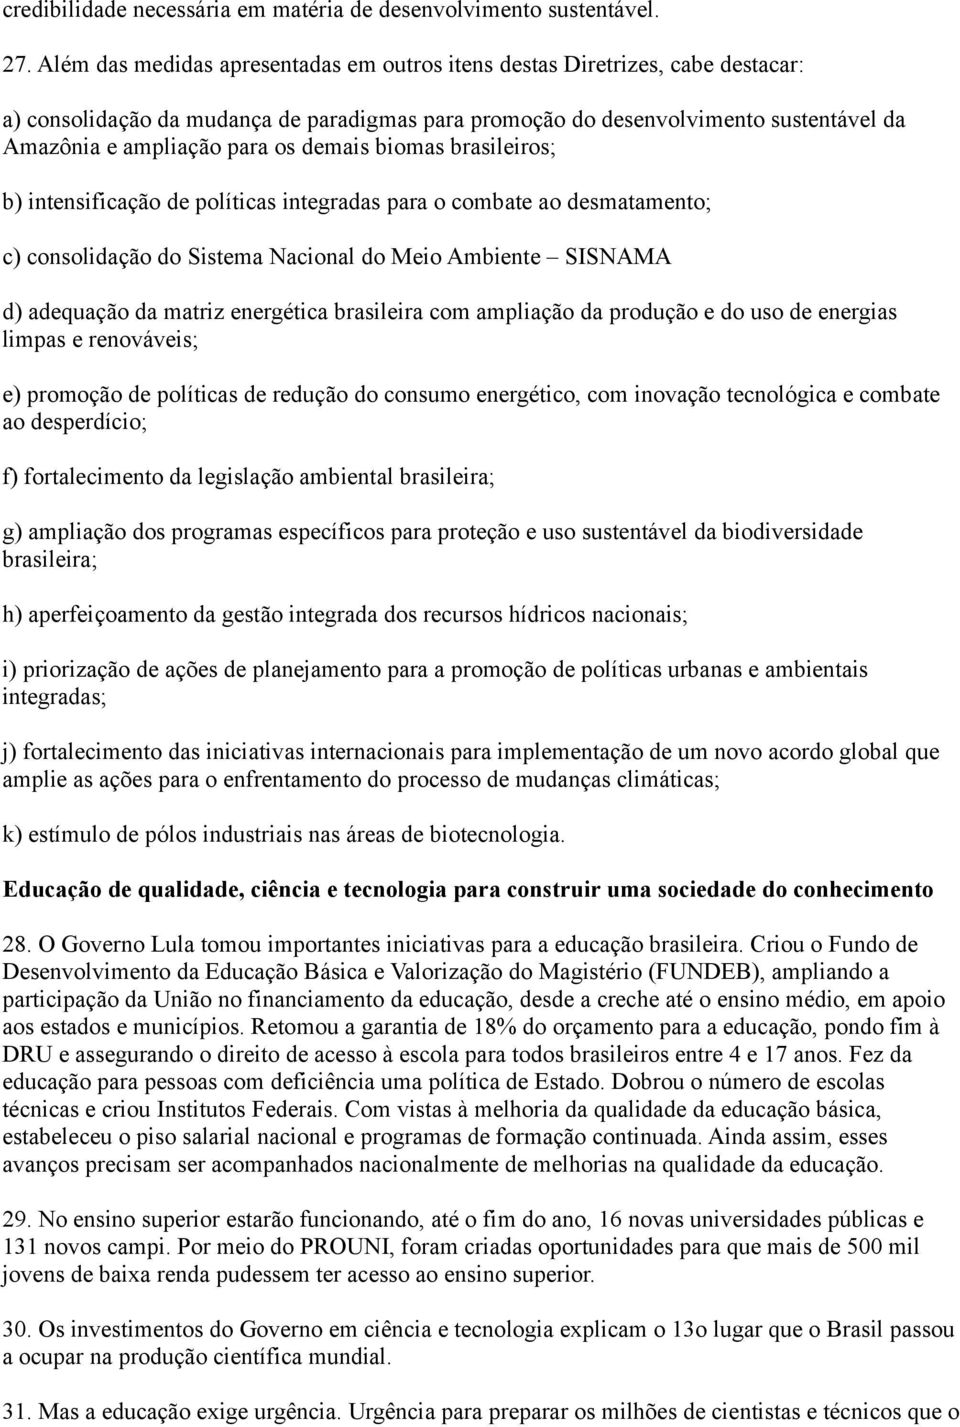 demais biomas brasileiros; b) intensificação de políticas integradas para o combate ao desmatamento; c) consolidação do Sistema Nacional do Meio Ambiente SISNAMA d) adequação da matriz energética